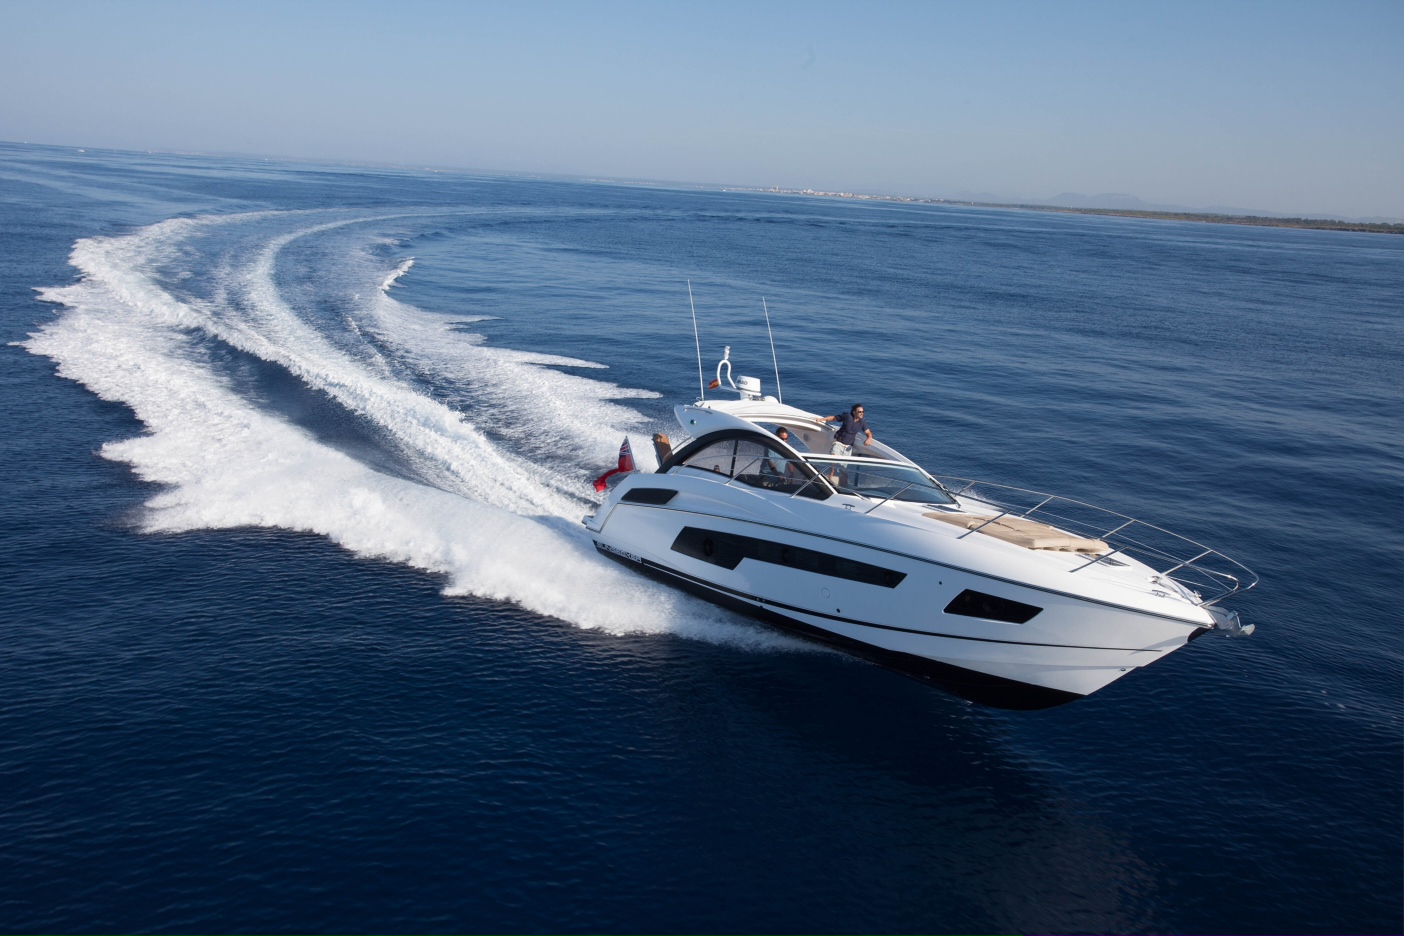 Sunseeker Portofino 40 yacht — Yacht Charter & Superyacht News1404 x 936